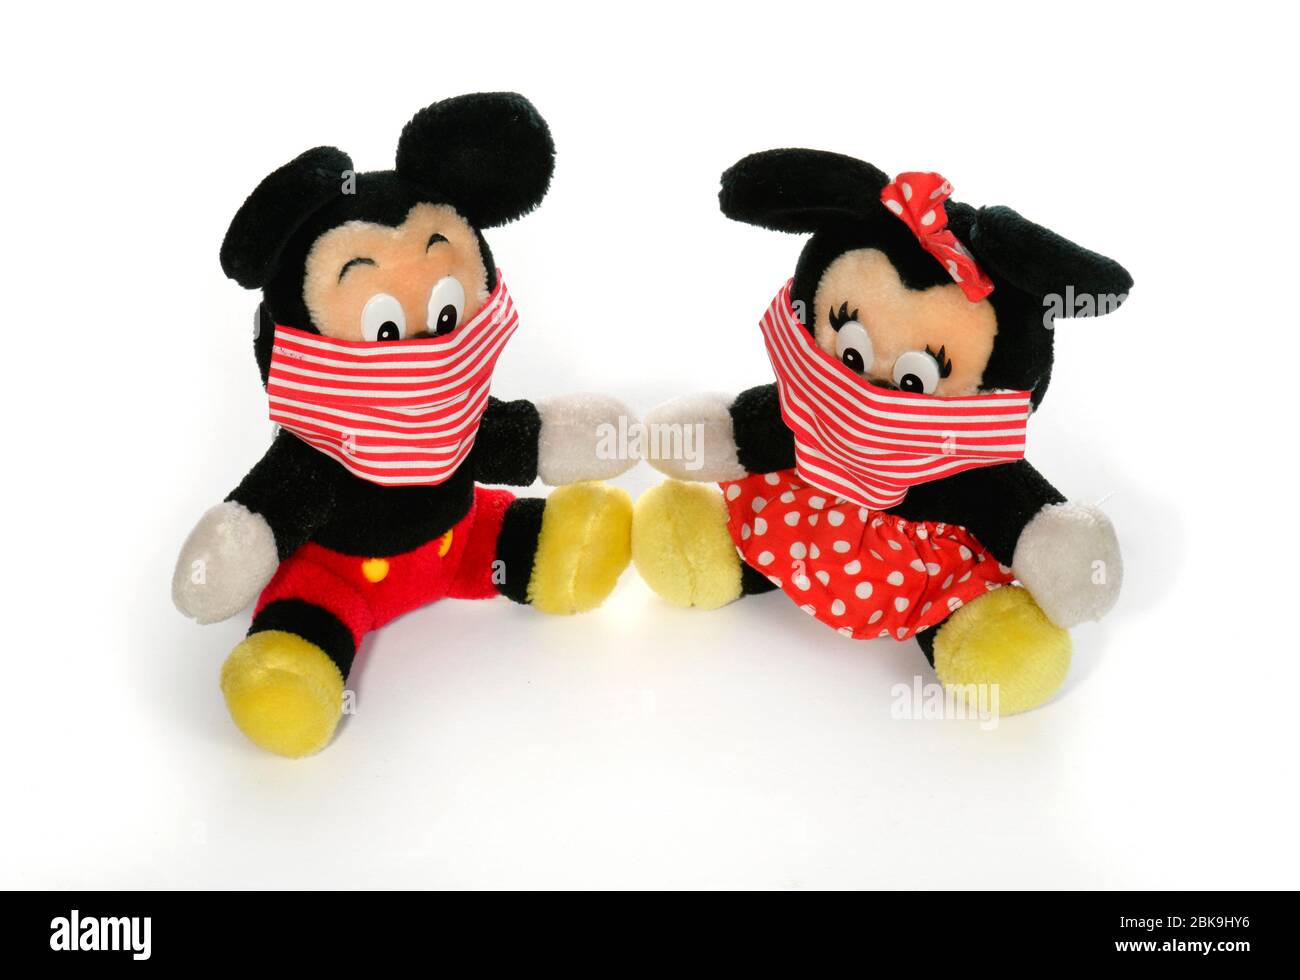 Symbol-Bild, Entertainment-Unternehmen Disney in Crisis, Micky und Minnie mit Gesichtsmasken, berühren einander, Corona-Krise, Deutschland Stockfoto